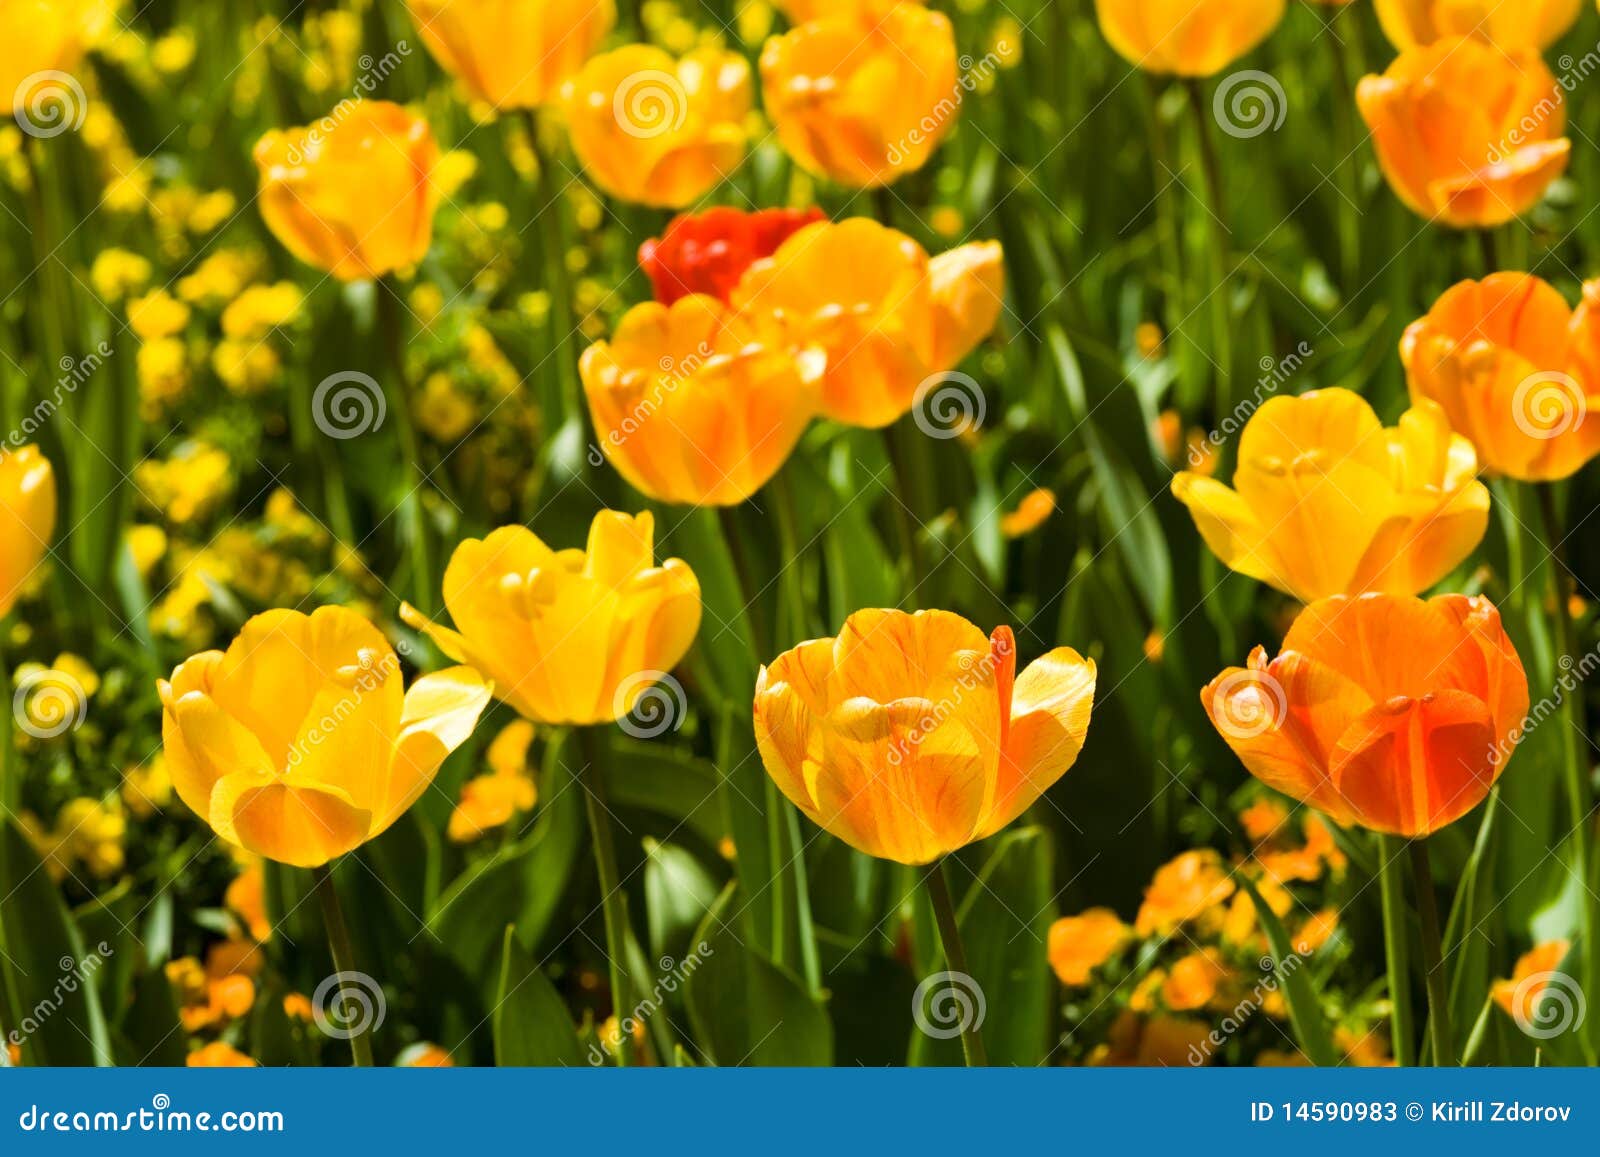 Uma foto de muitas flores do tulip, horizontal